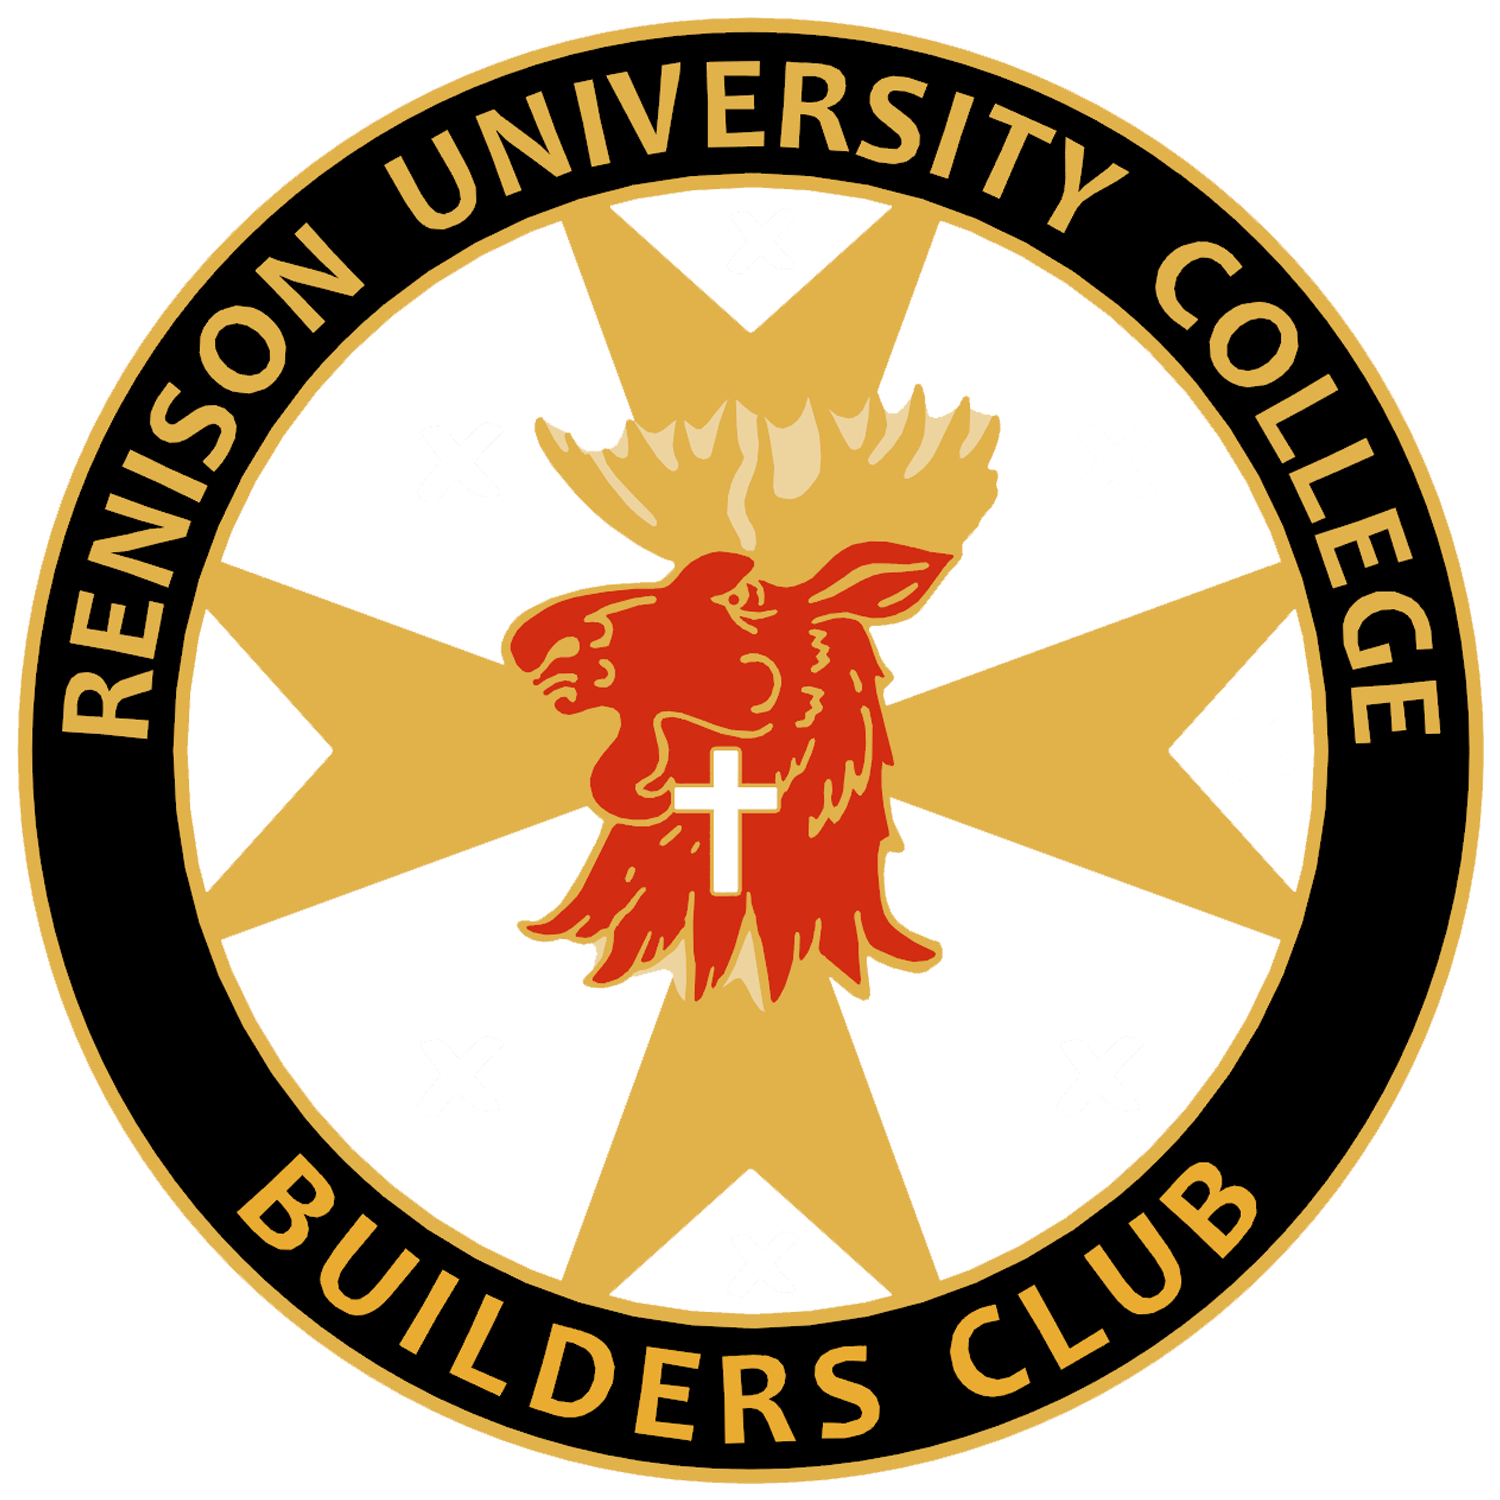 Builders club badge